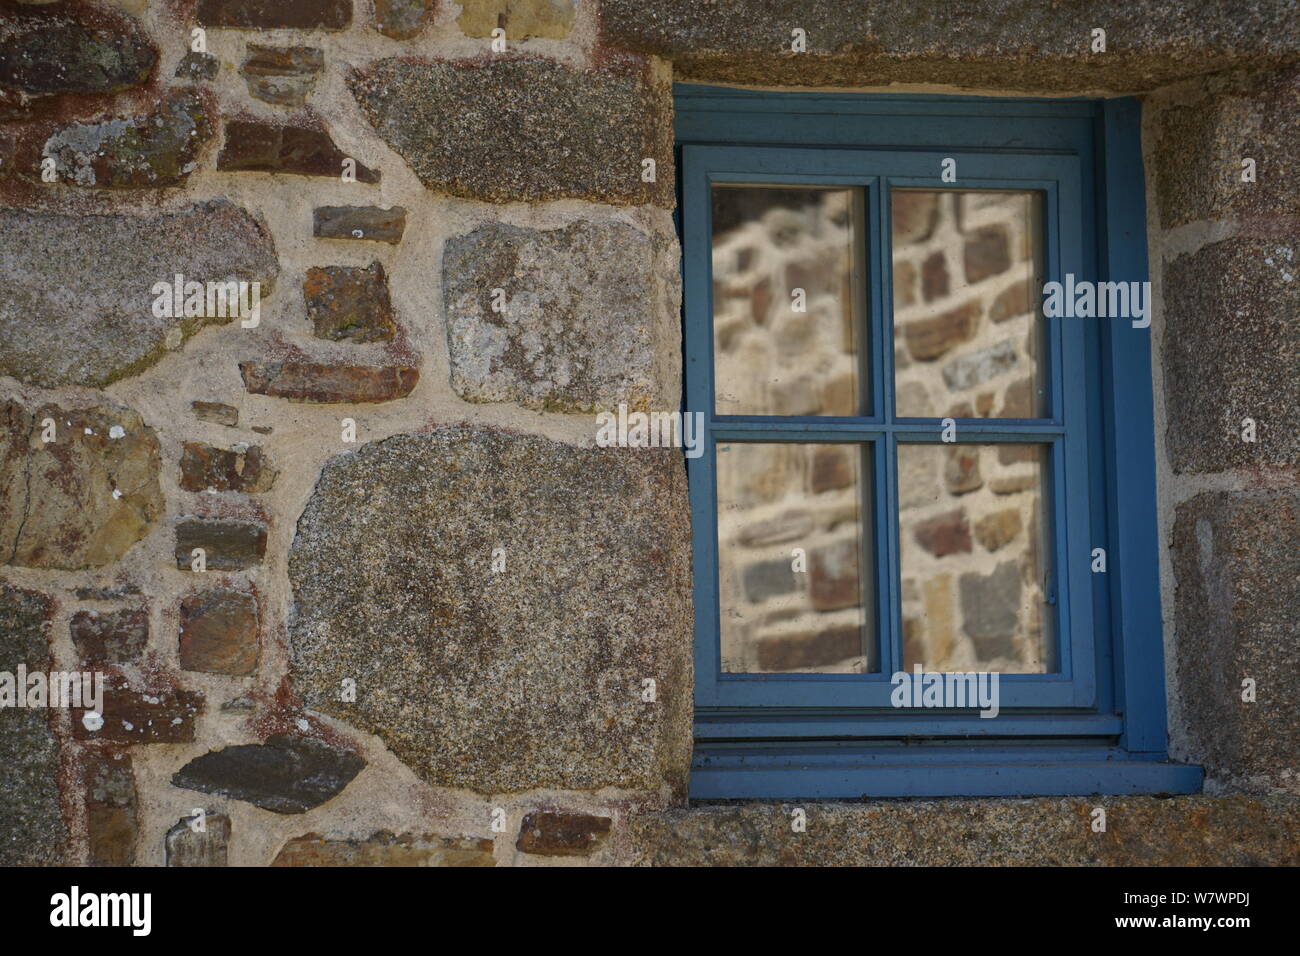 In prossimità di un antico muro di pietra con diverse rocce e riflessione a specchio in una finestra Foto Stock